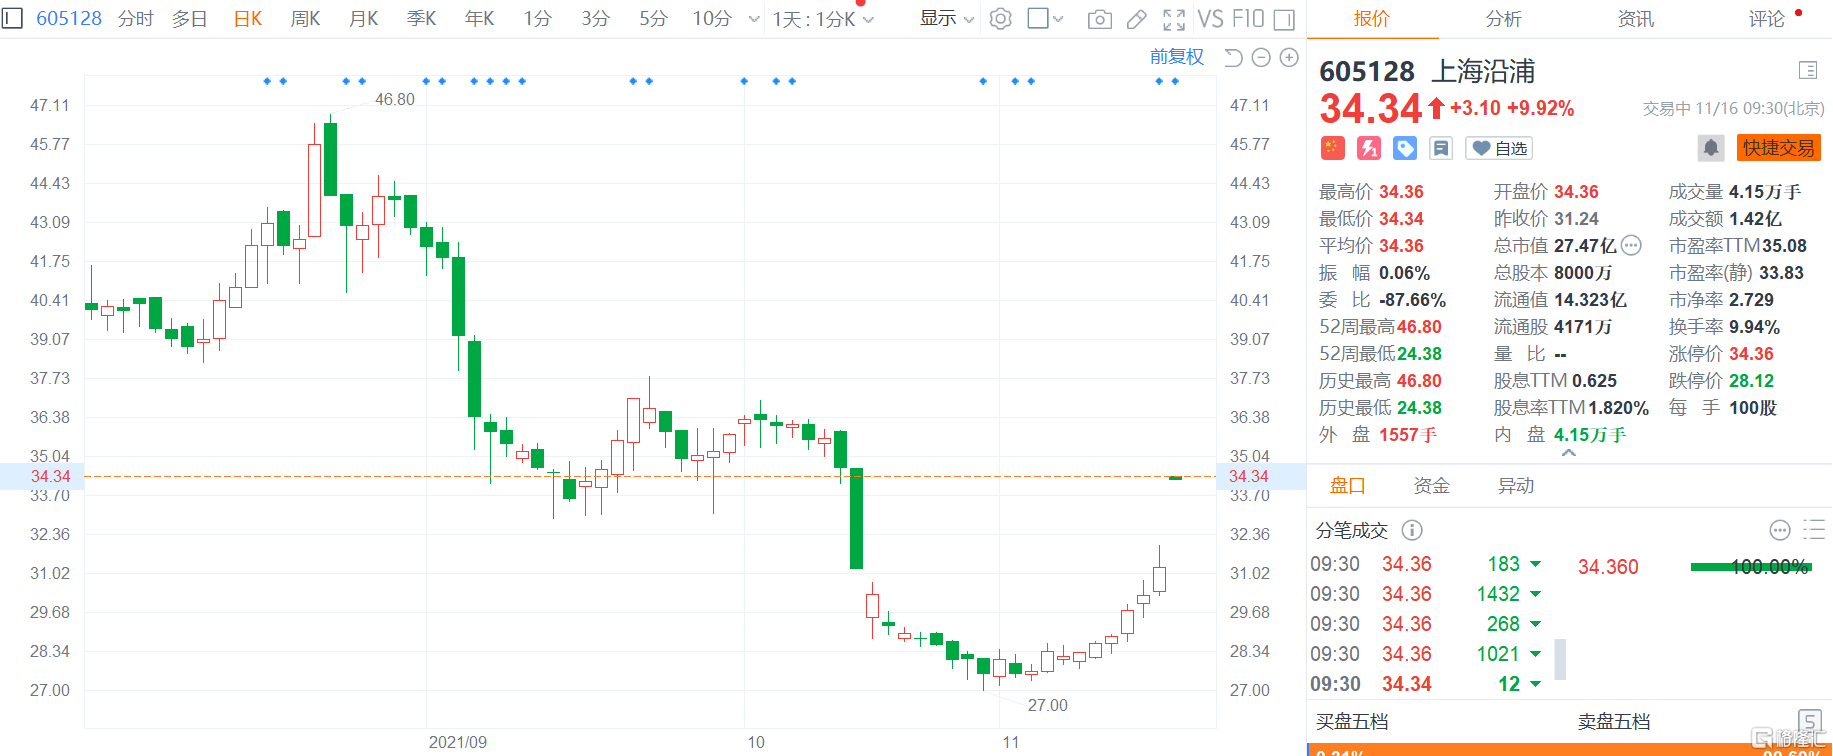 上海沿浦现已打开涨停板报34.34元，股价创近一个月新高